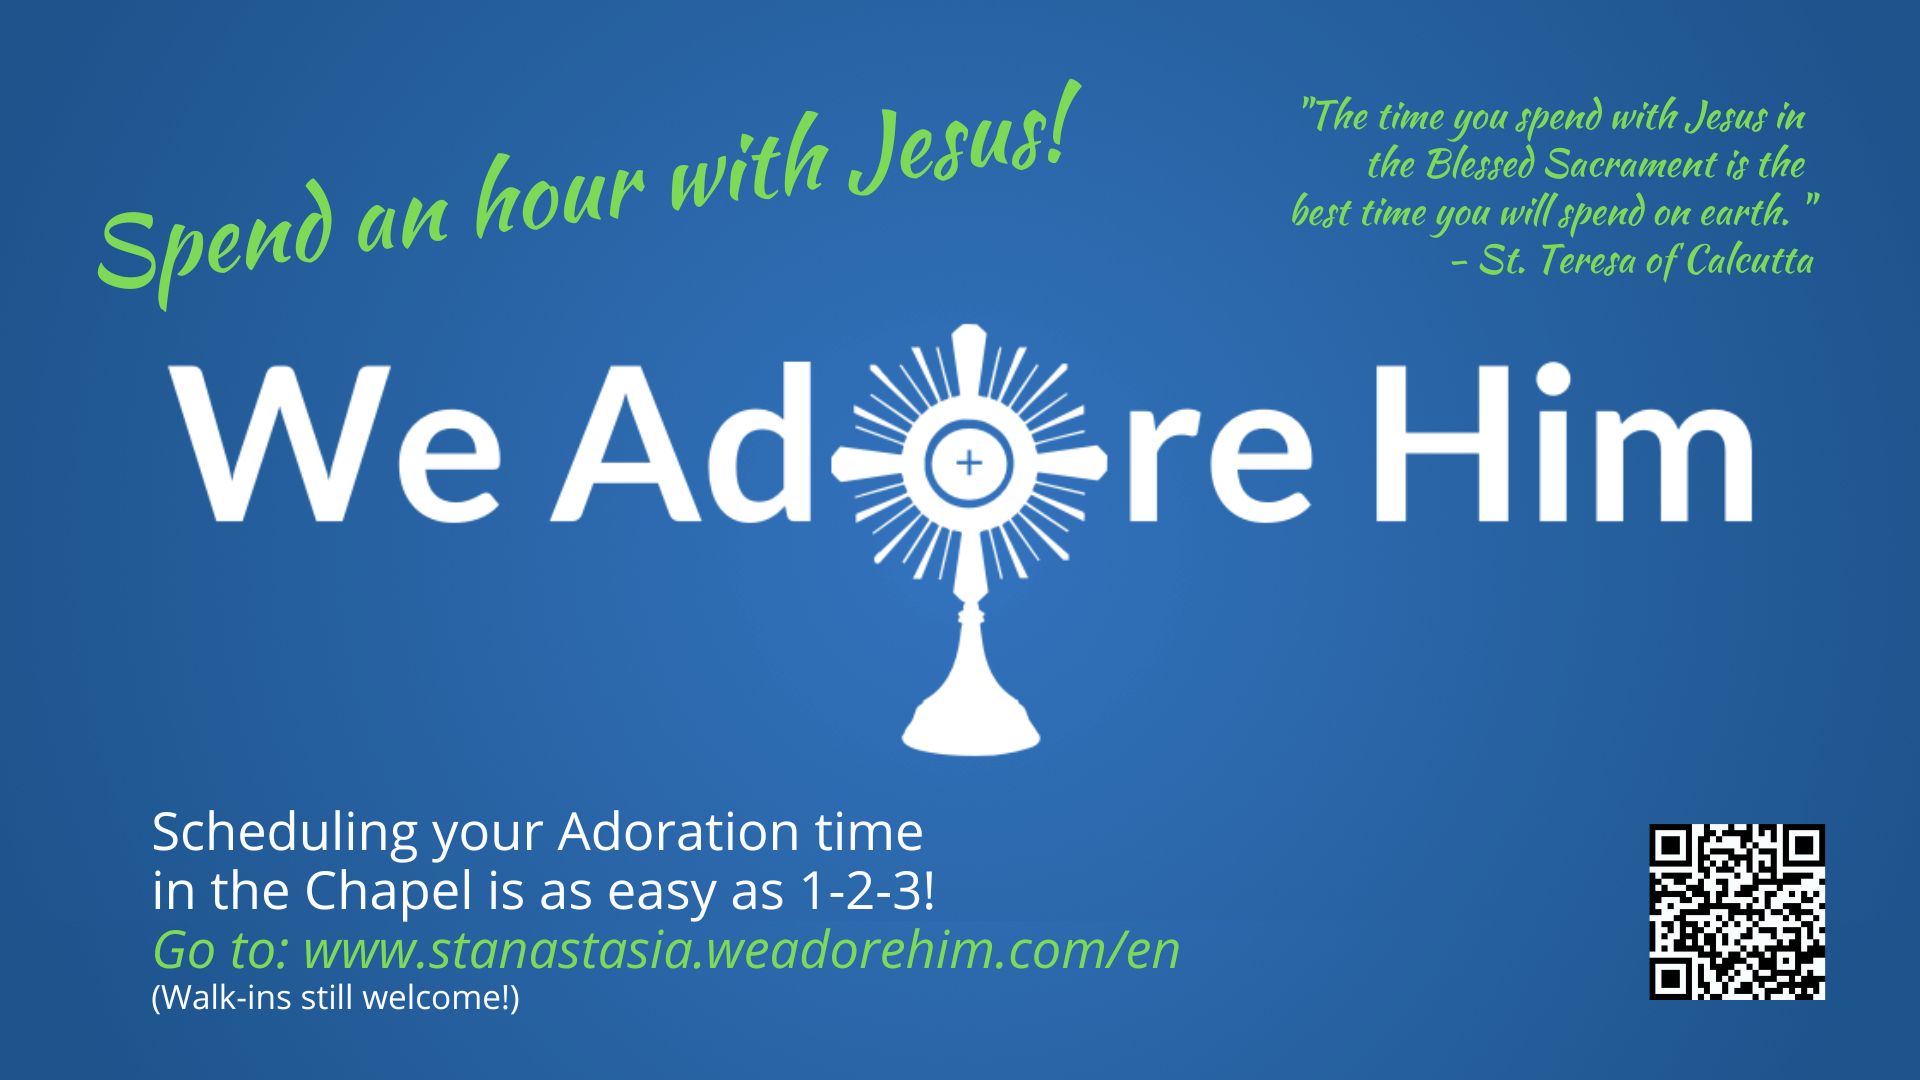 New Program for Adoration